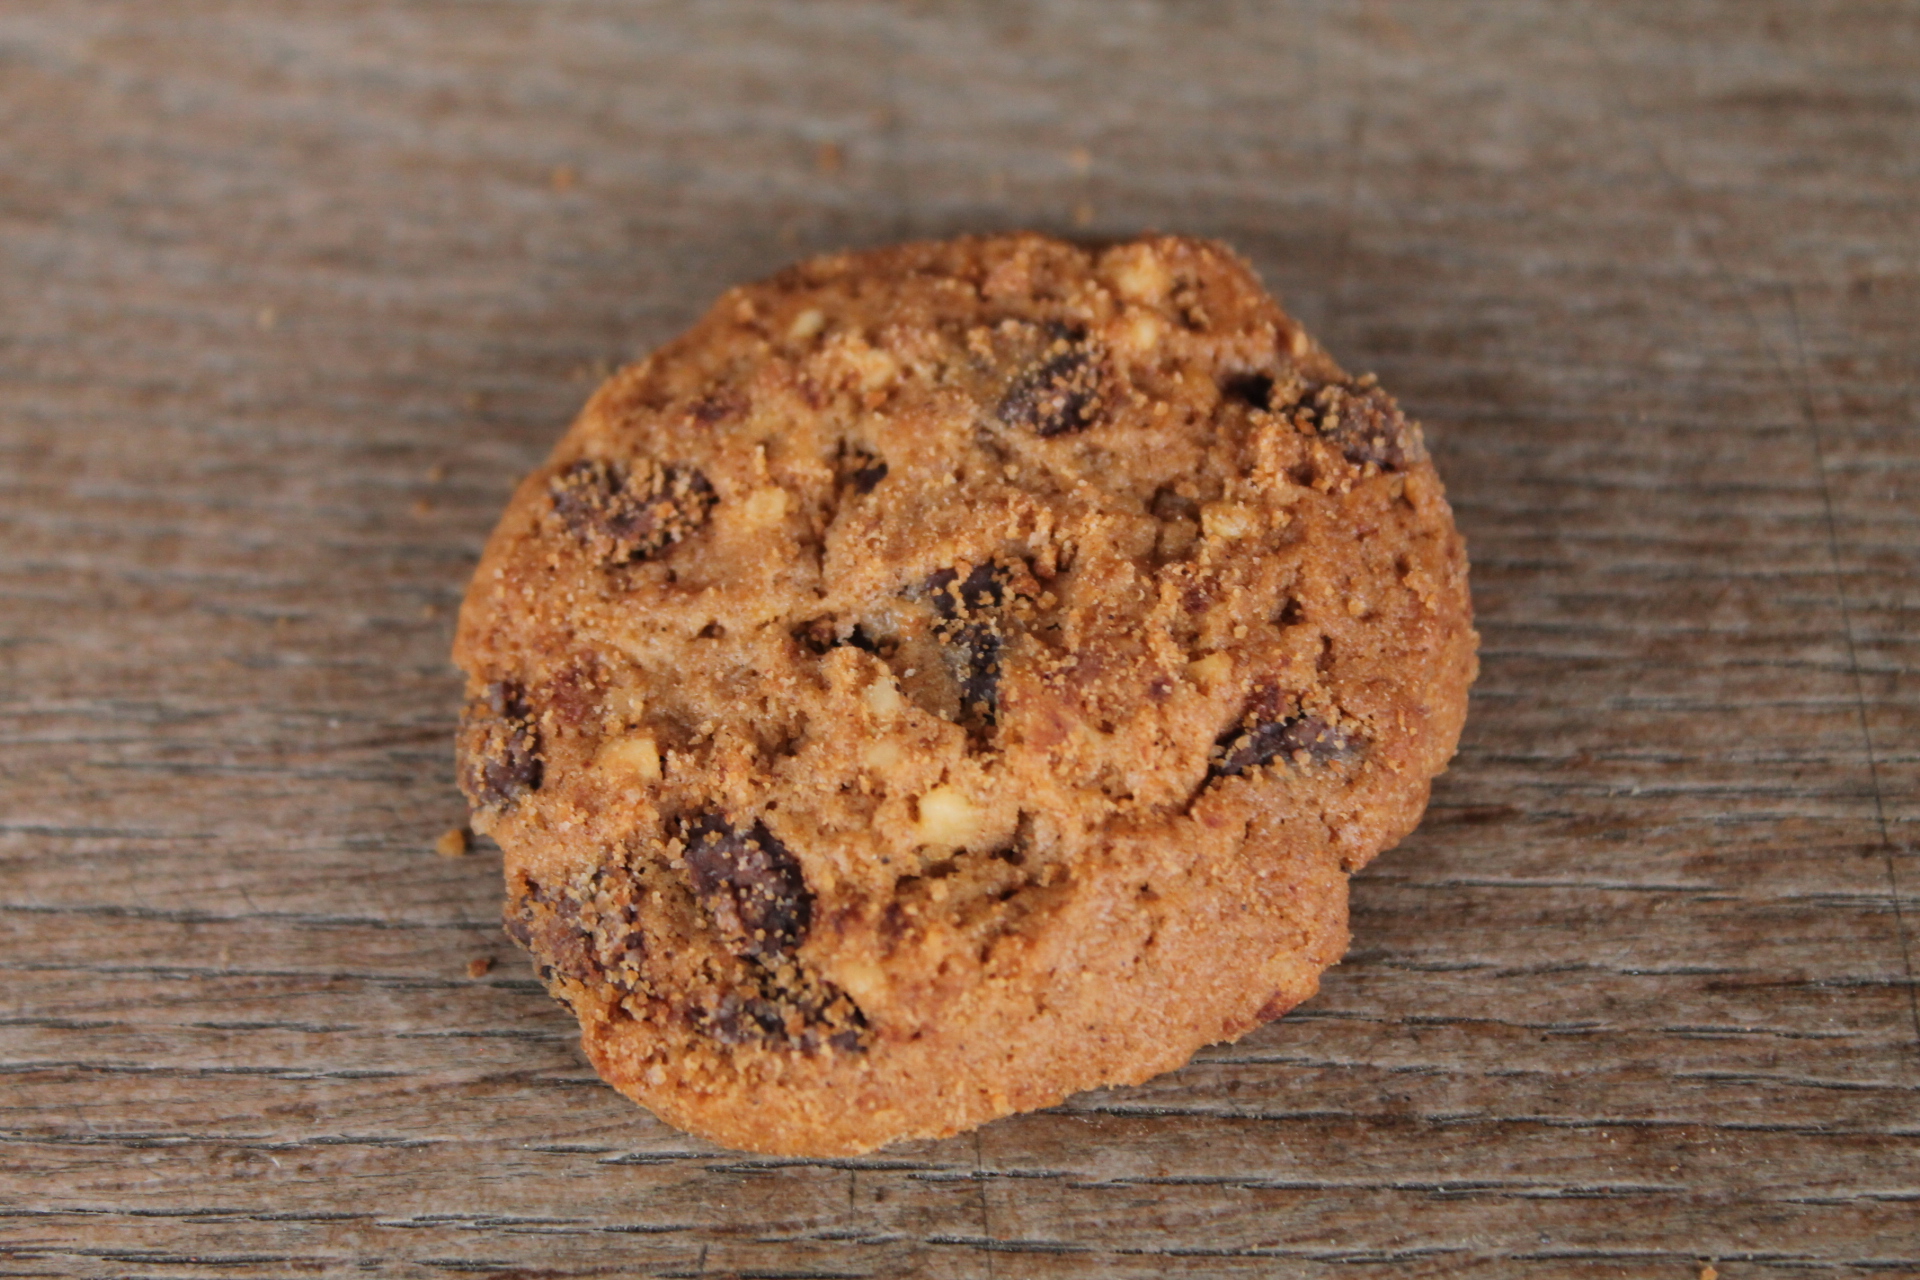 KIGNON - Biscuits aux pains, chocolat noir et noisettes apparence 